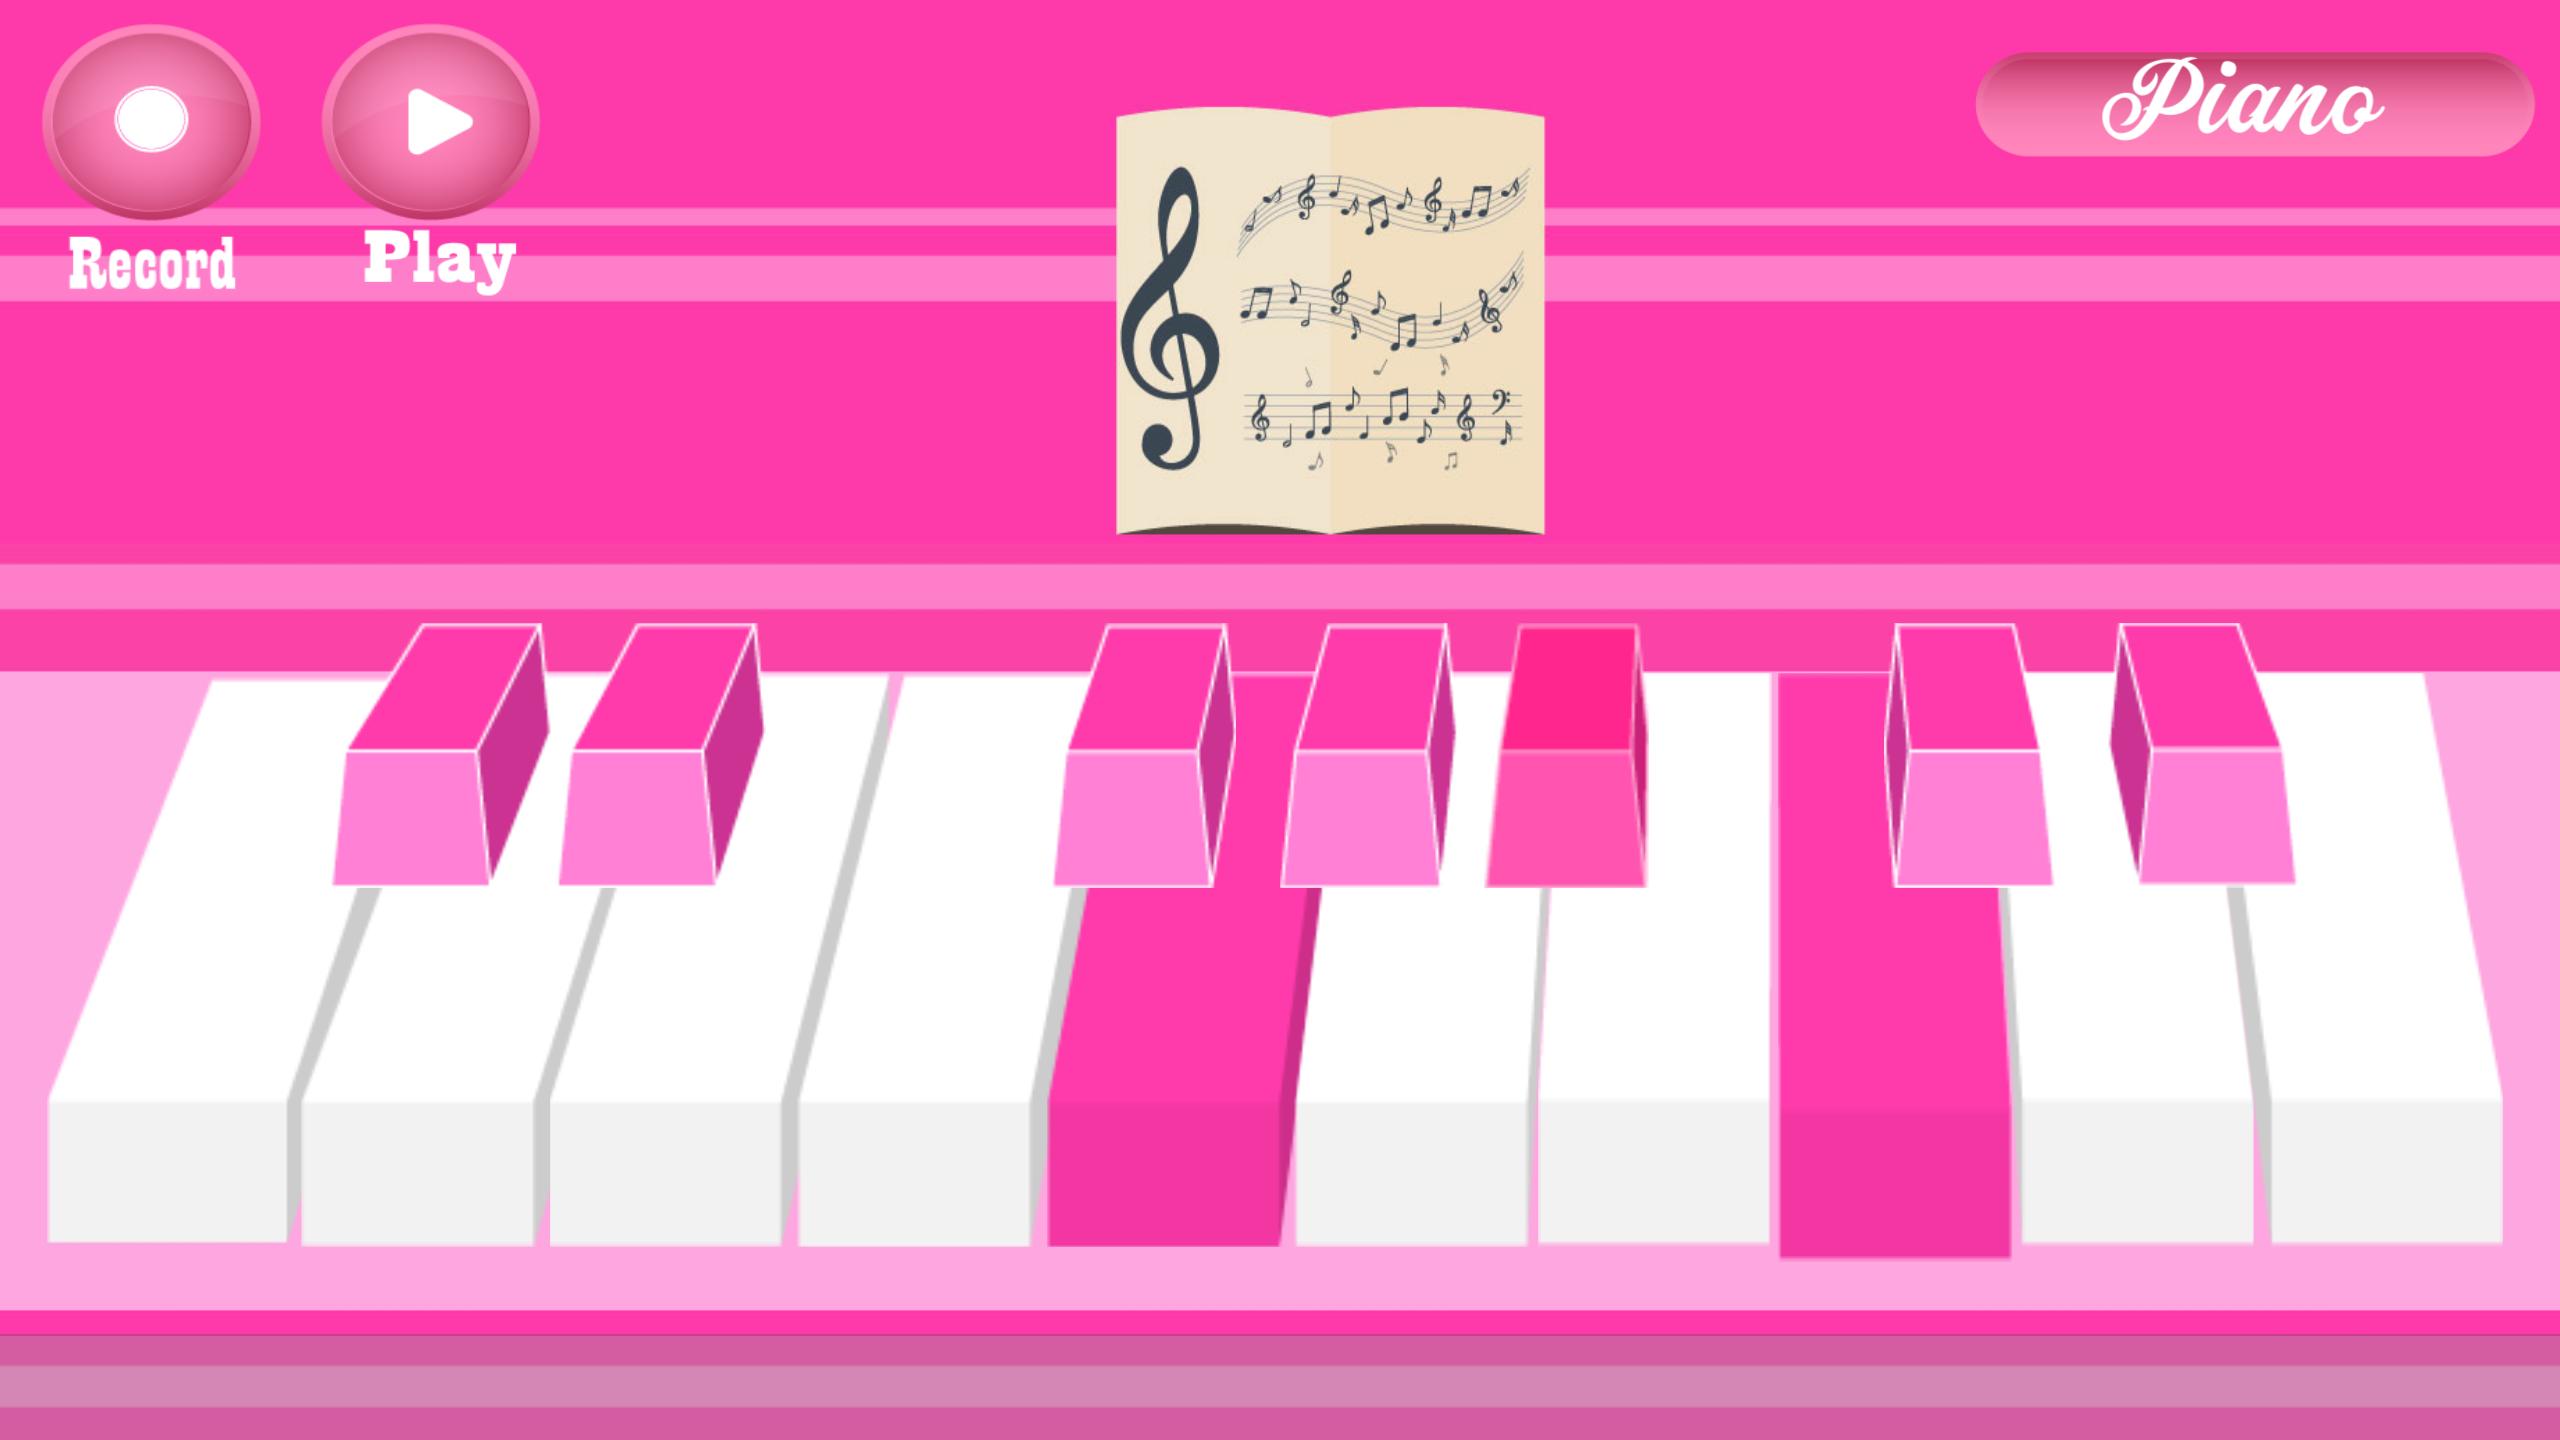 Игра на пианино. Игра пианино играть. Пианино розовое для девочек. Нарисованный розовый рояль. Играть на пианино падеж